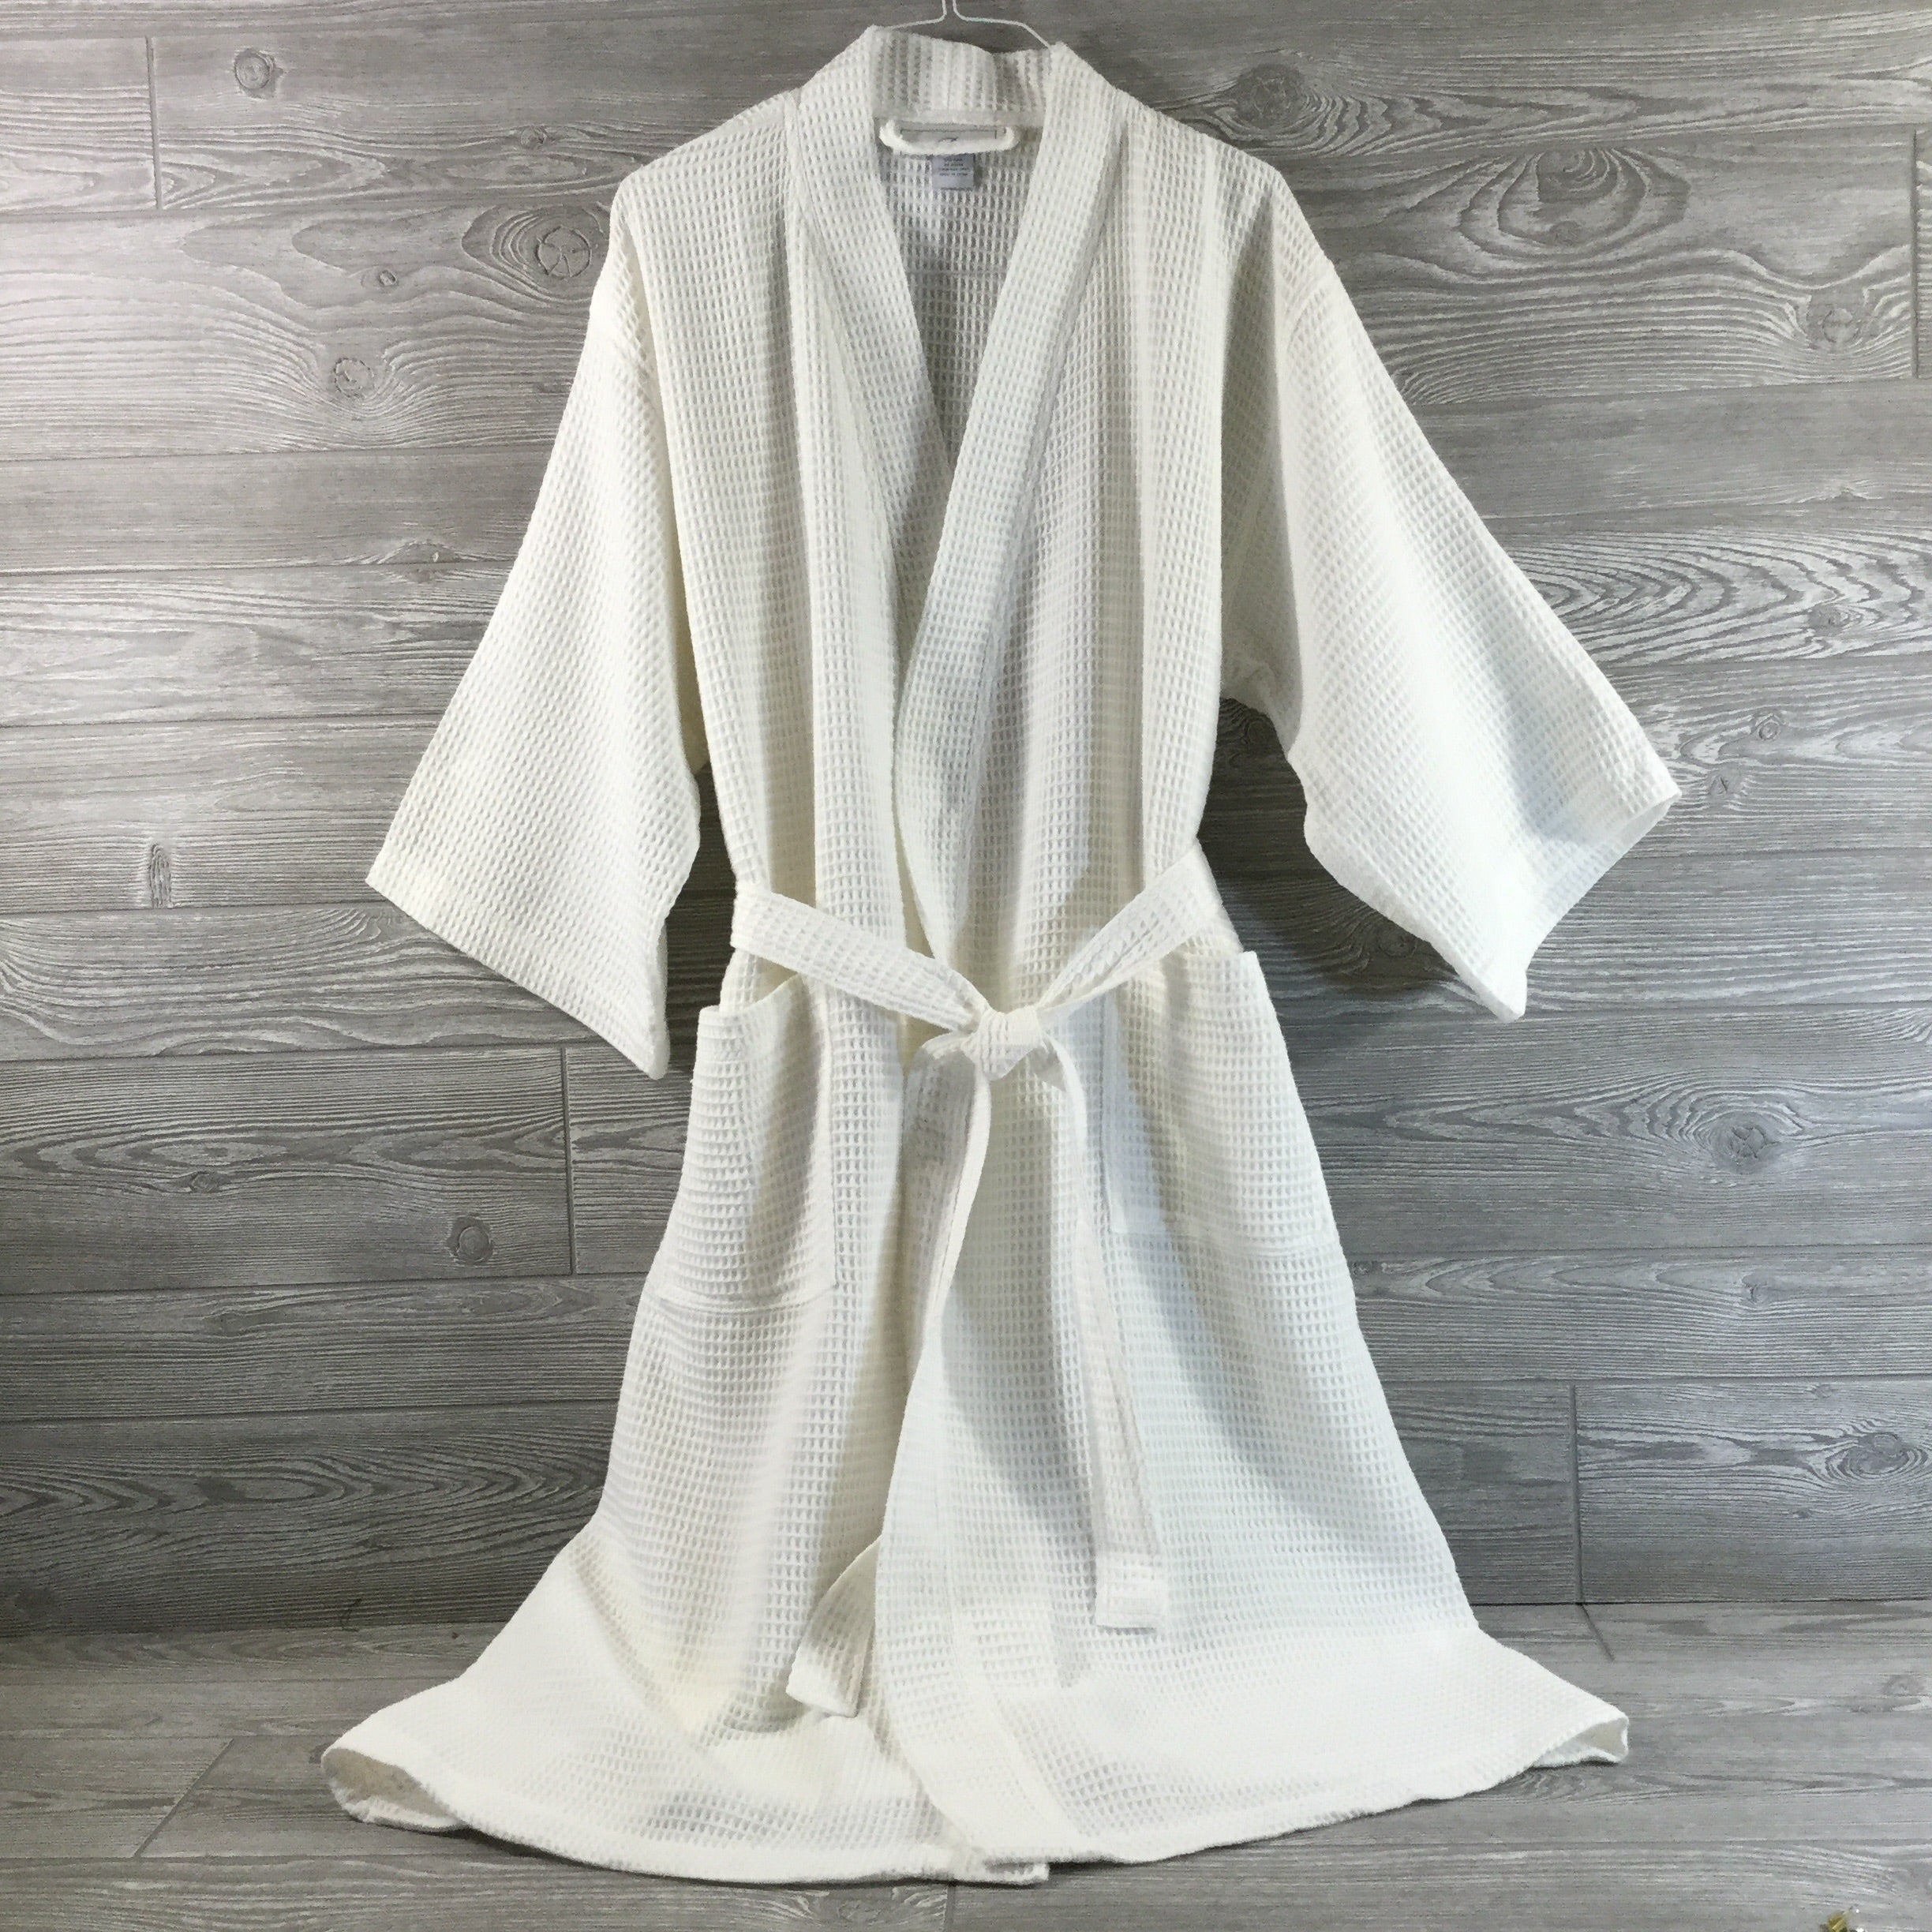 kimono style gown